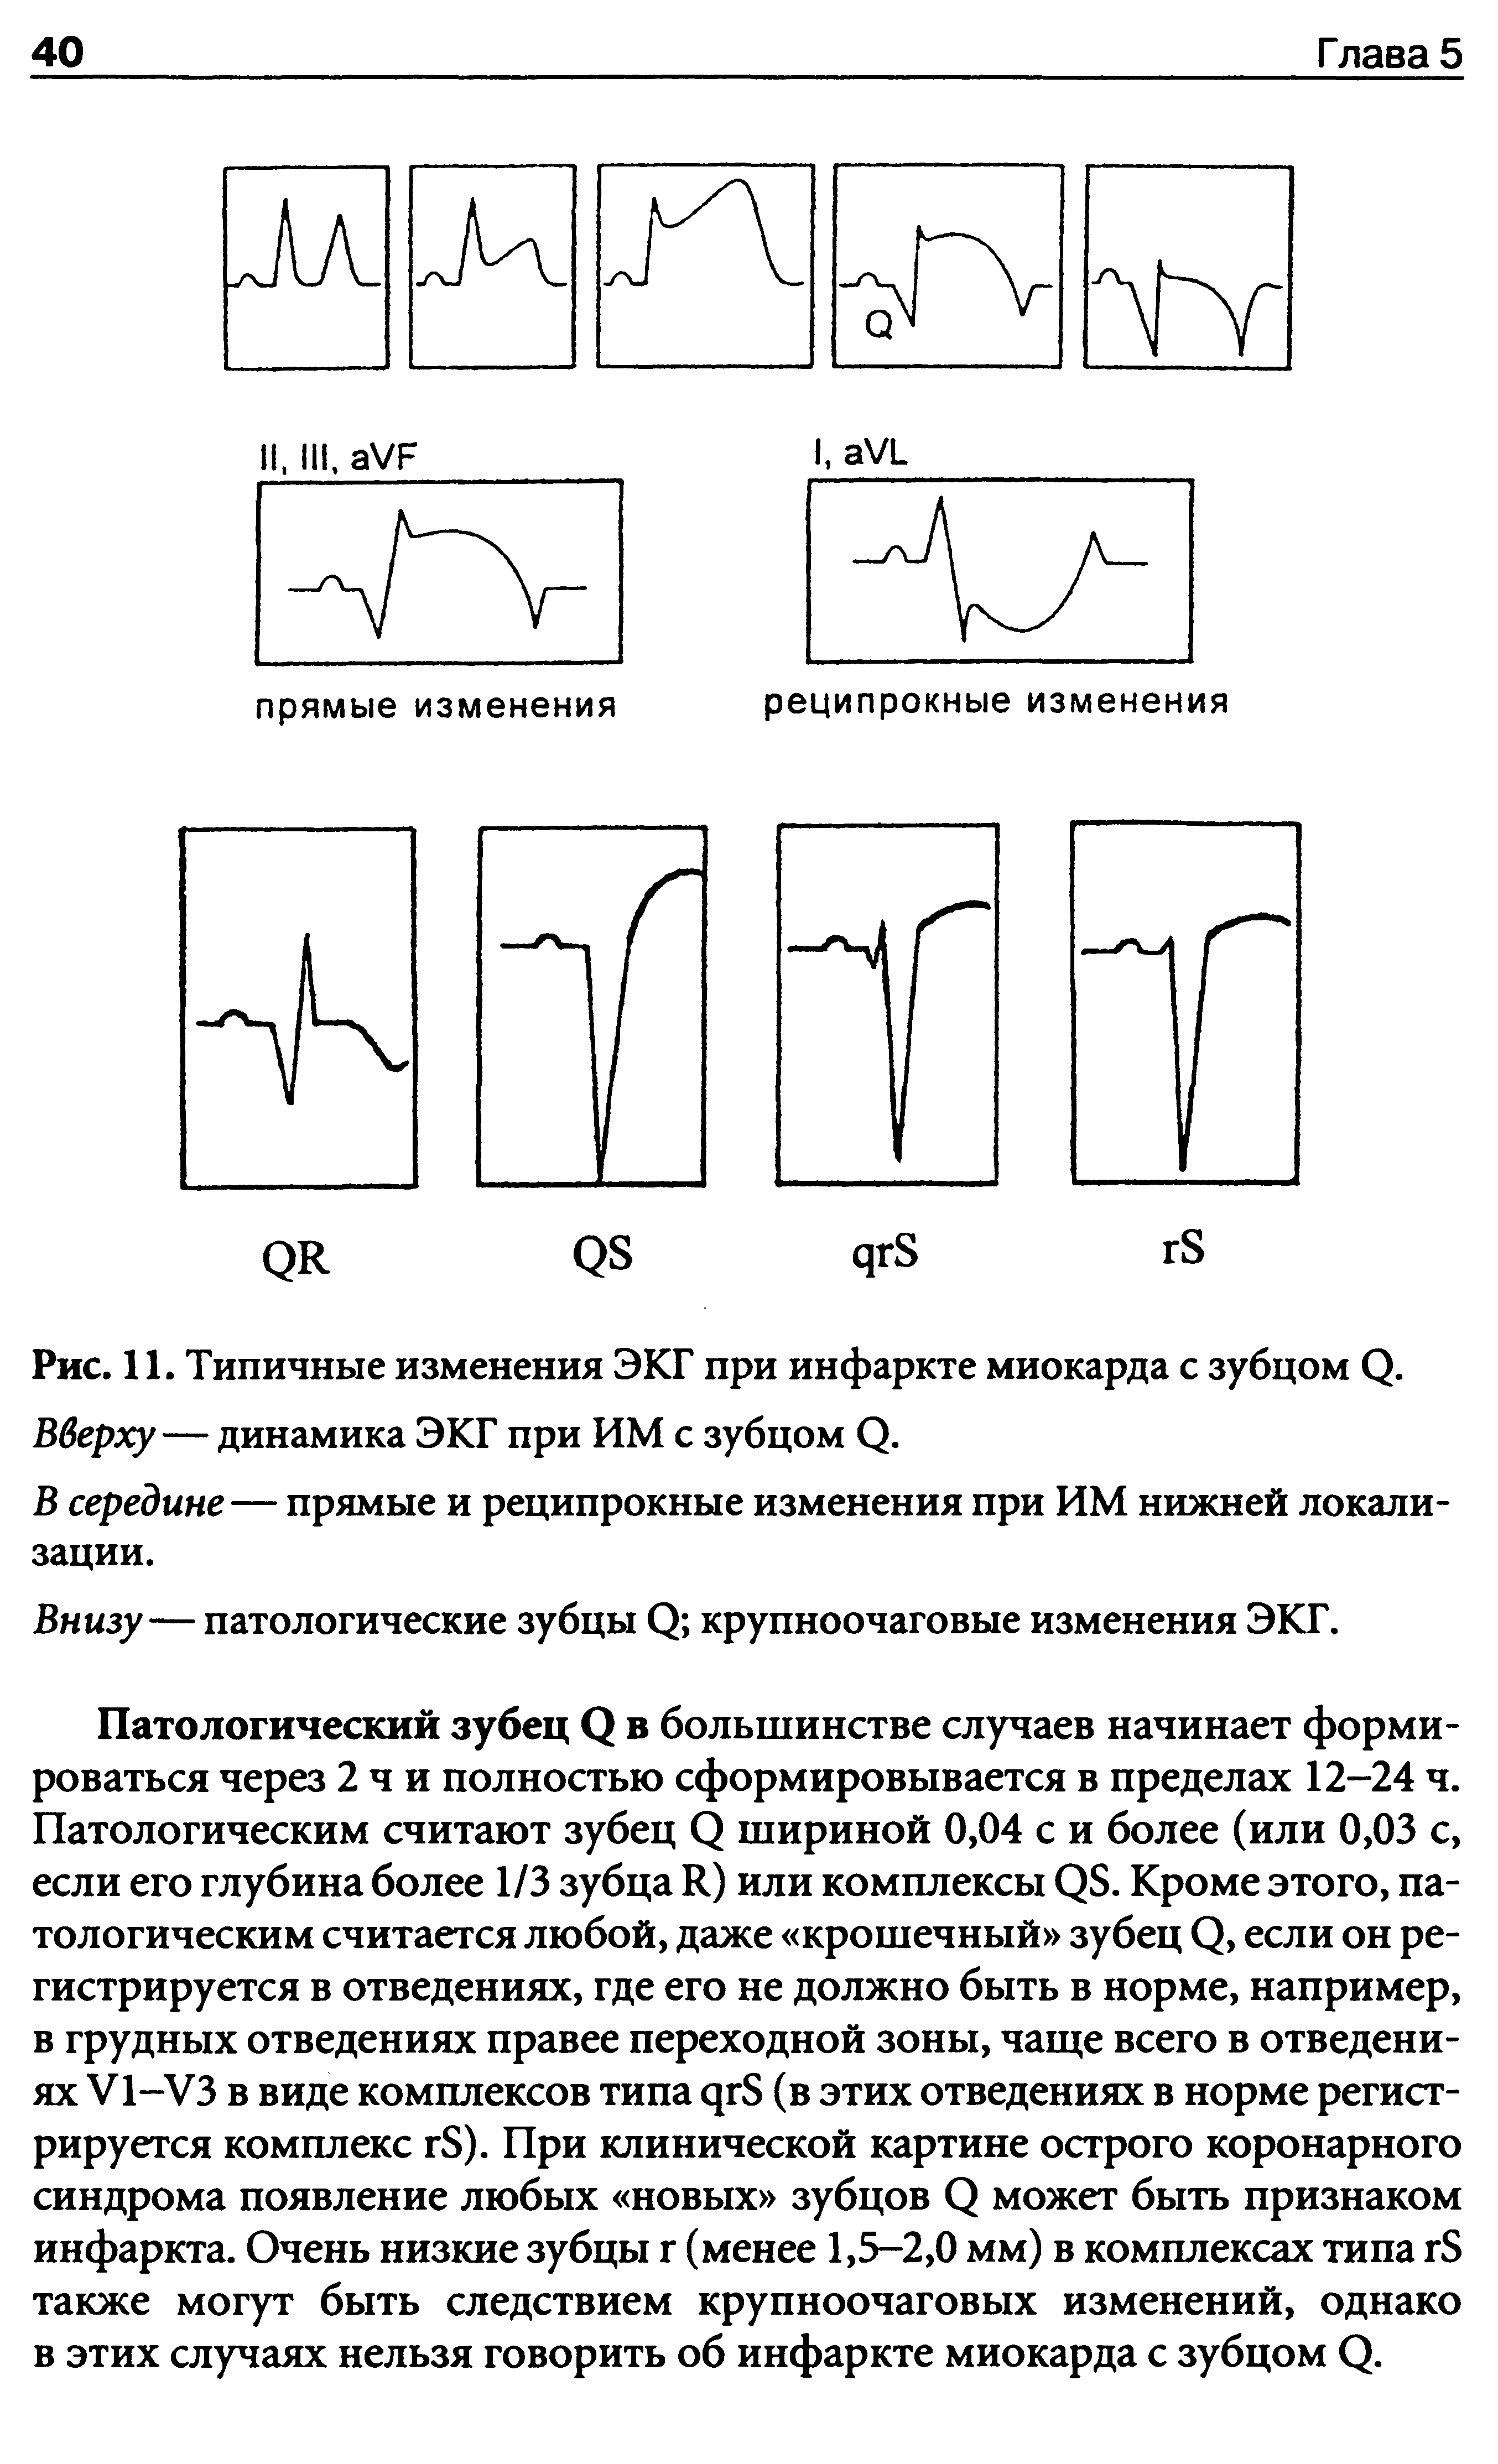 Рис. 11. Типичные изменения ЭКГ при инфаркте миокарда с зубцом (2. Вверху—динамика ЭКГ при ИМ с зубцом О.